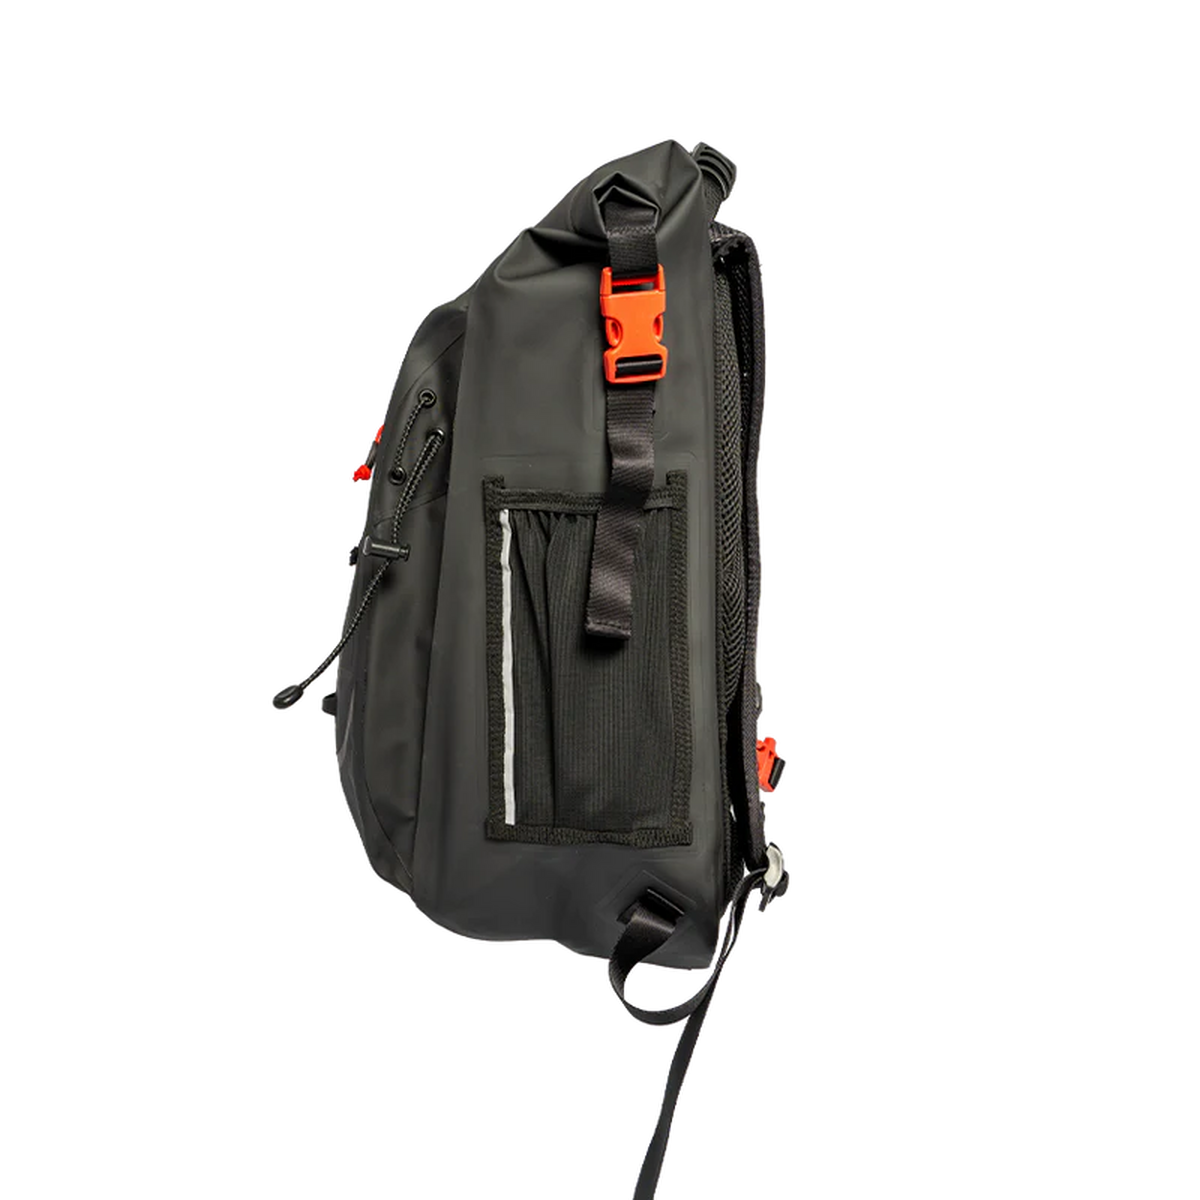 Red Equipment Adventure Waterproof Backpack - Black